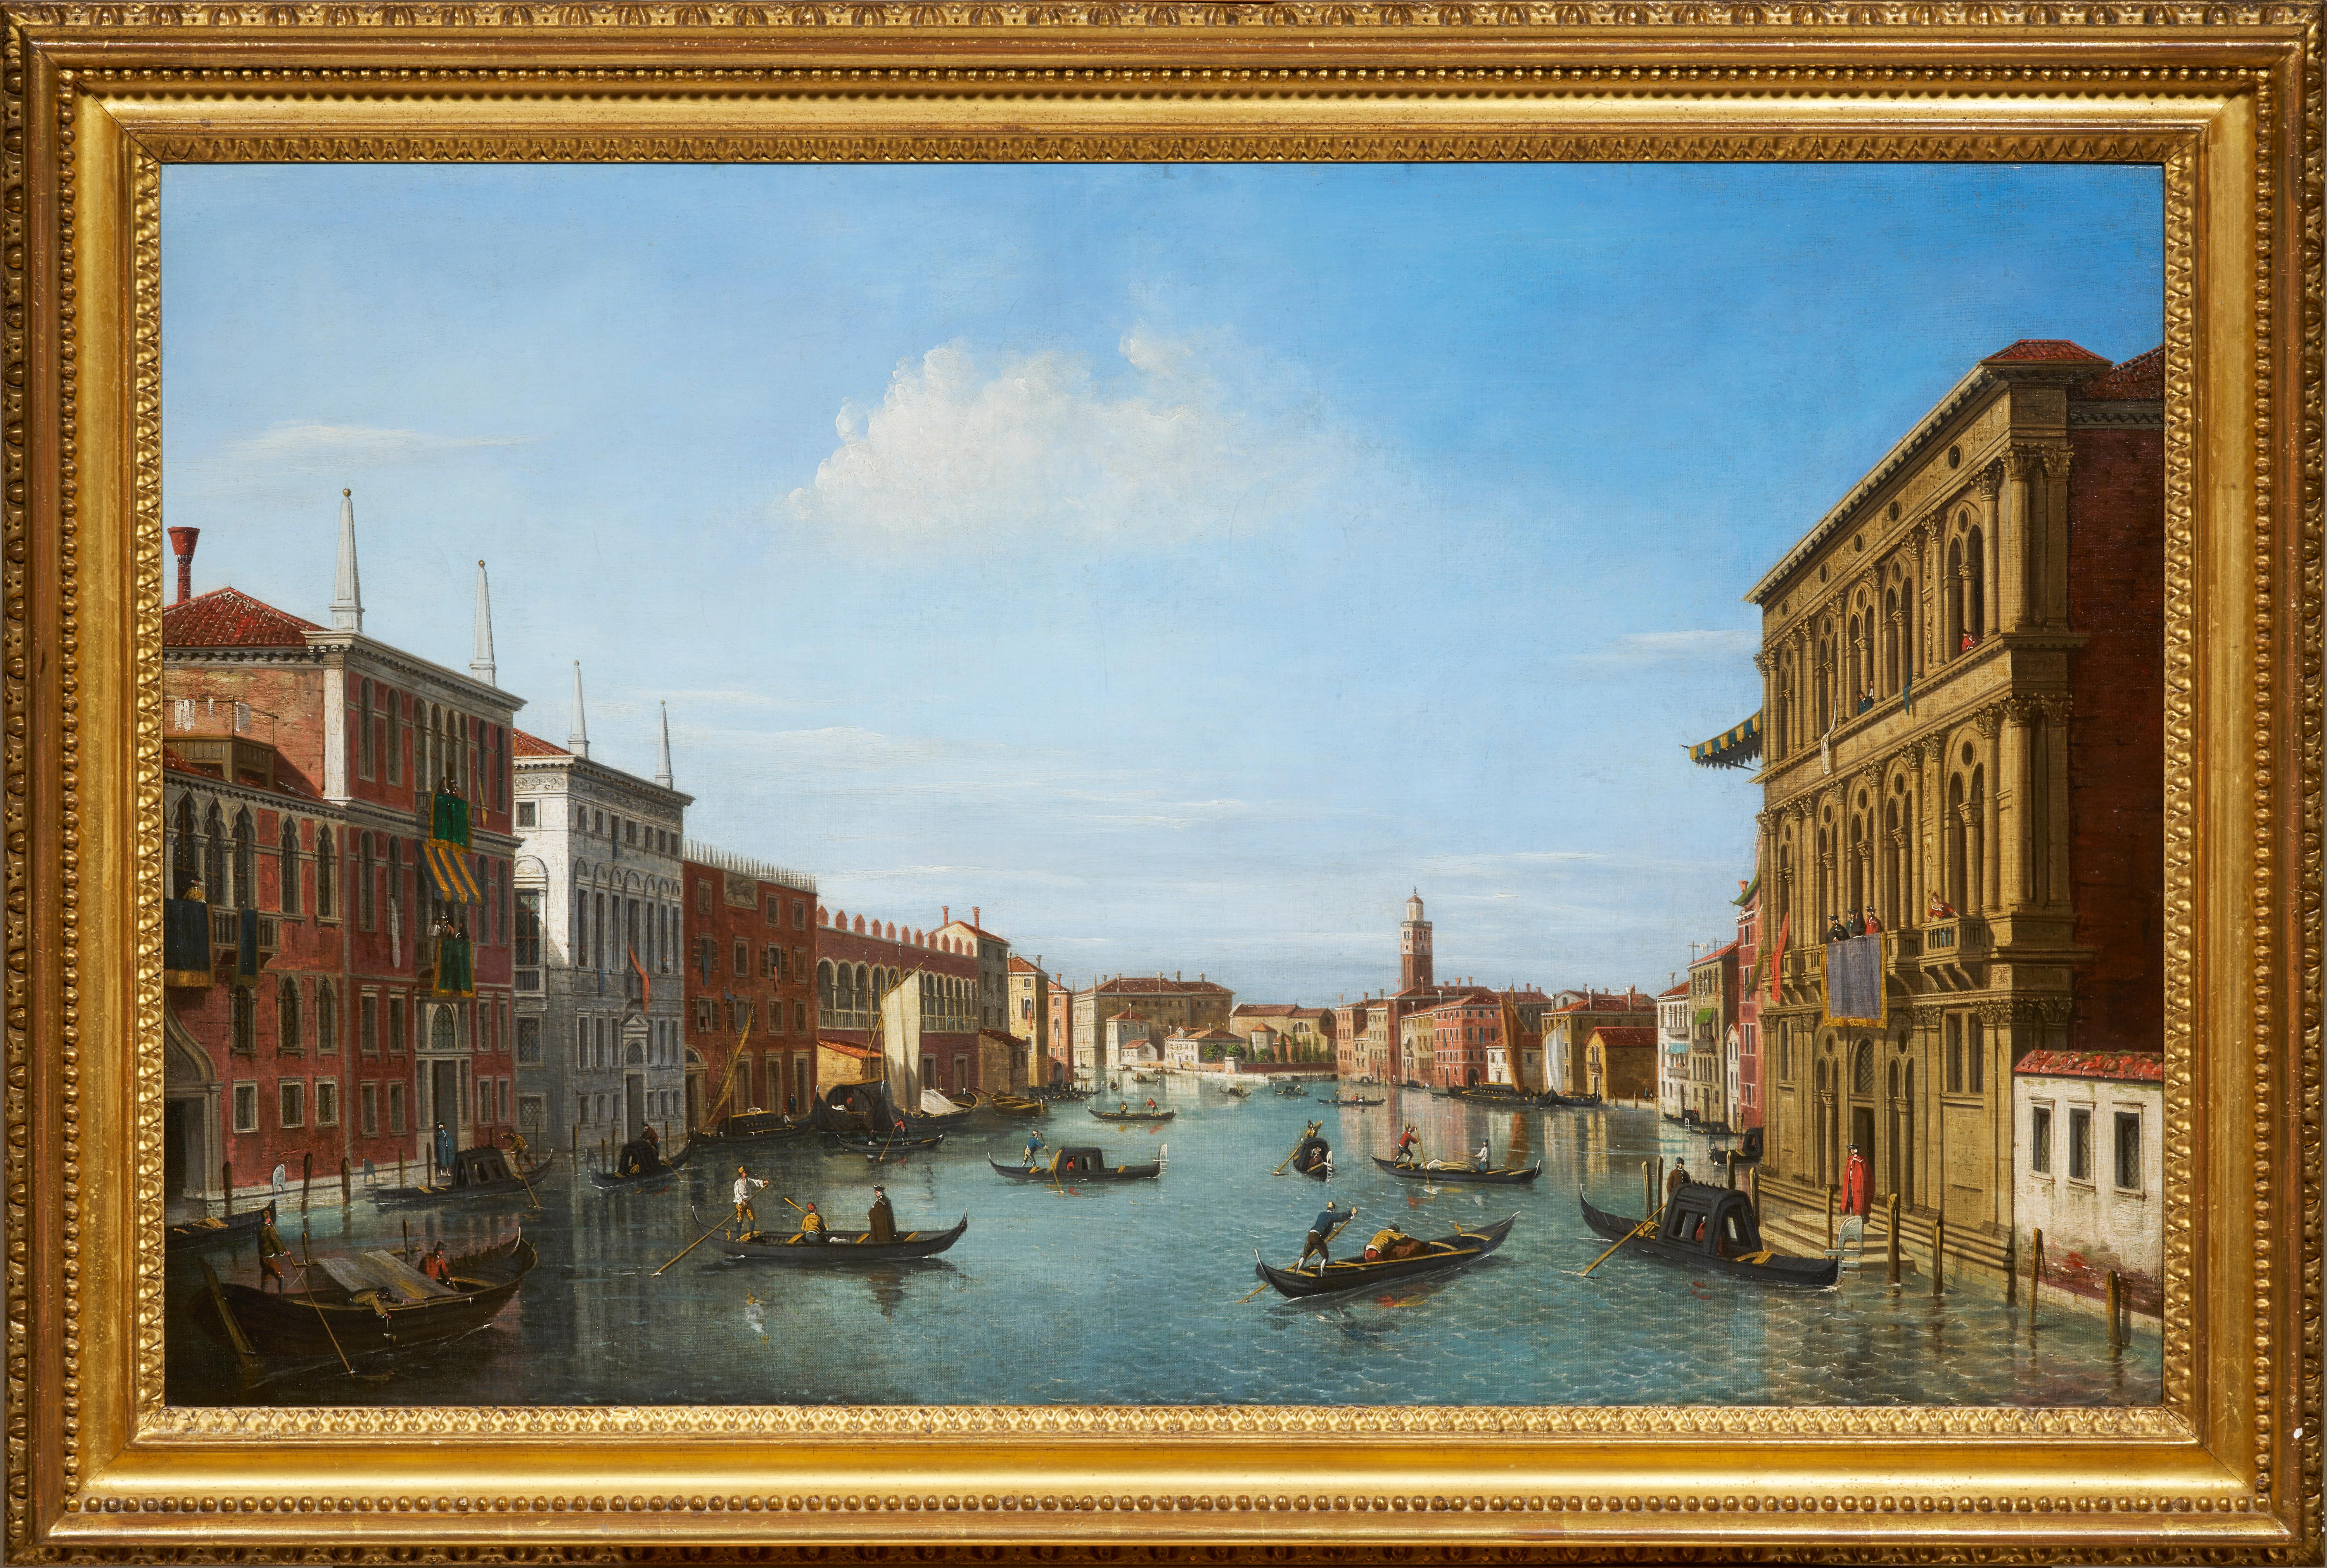 Bien que nous disposions de peu d'informations bibliographiques sur William James, nous savons qu'il a été formé par Canaletto lors du séjour du peintre en Angleterre entre 1746 et 1755. Bien qu'il ne se soit jamais rendu à Venise, William James est